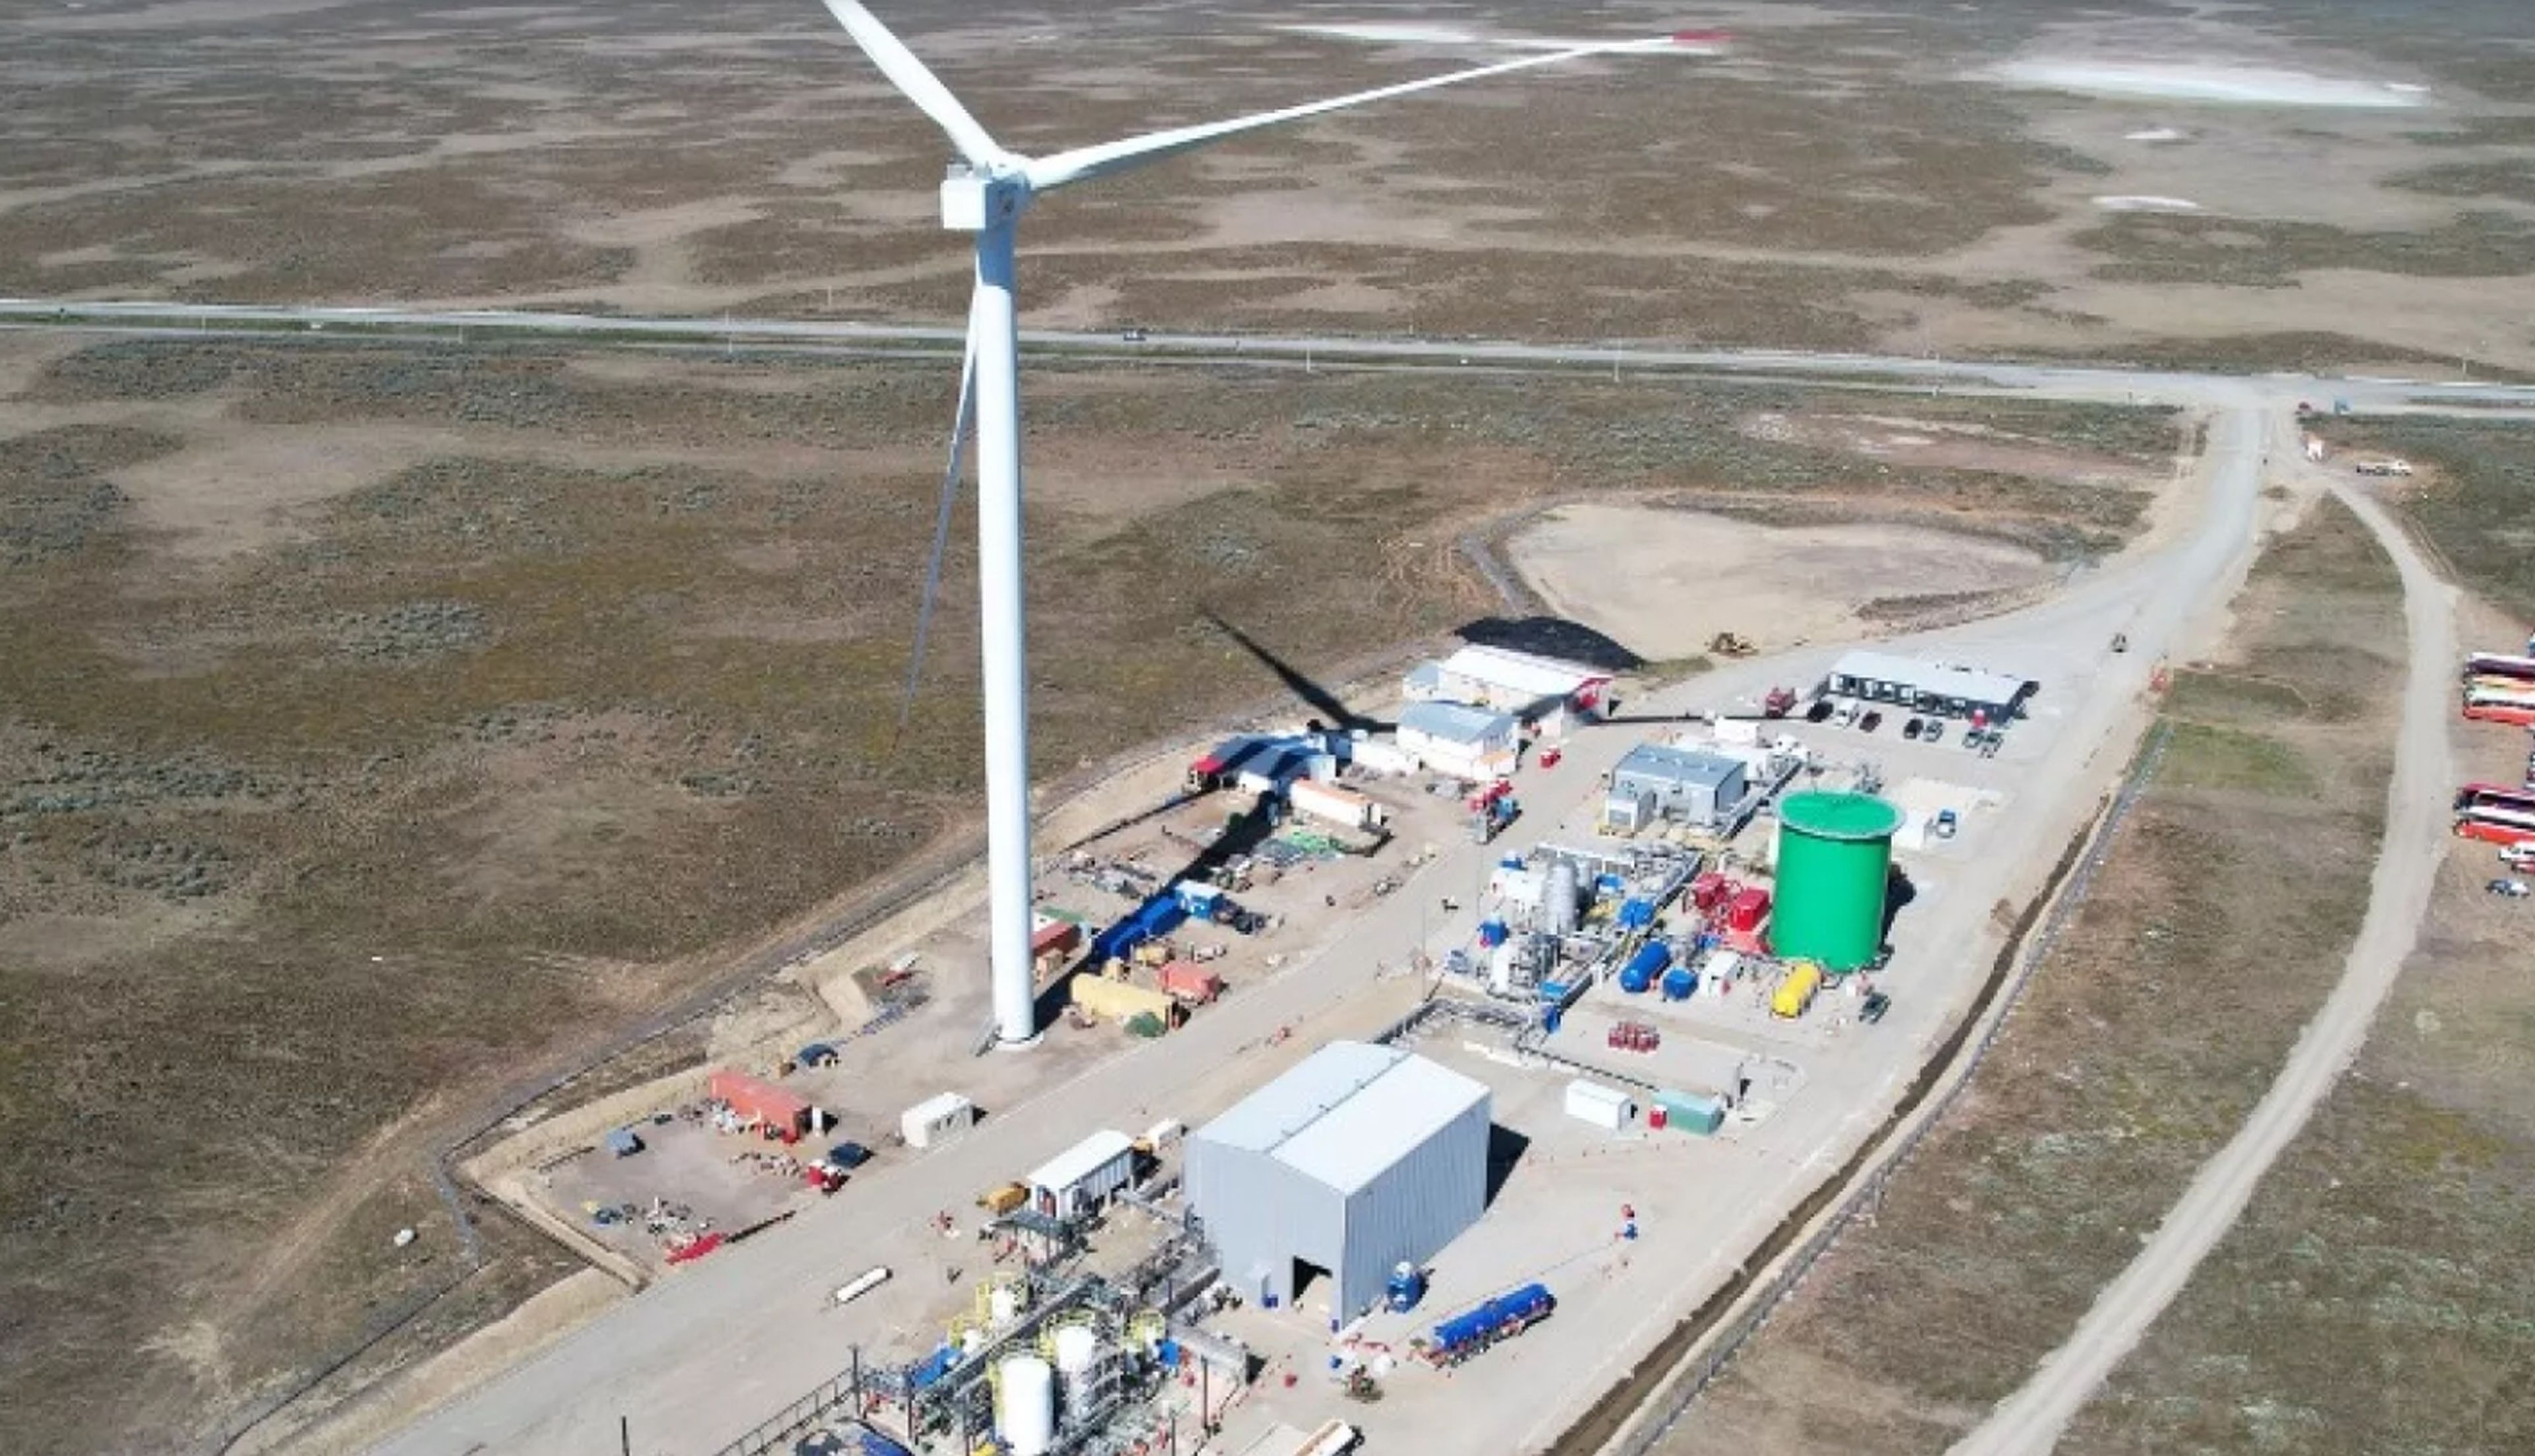 Planta de Demostración Haru Oni, una planta de combustible sintético que comenzó a operar en Punta Arenas, Chile. Fuente: HIF GLOBAL.